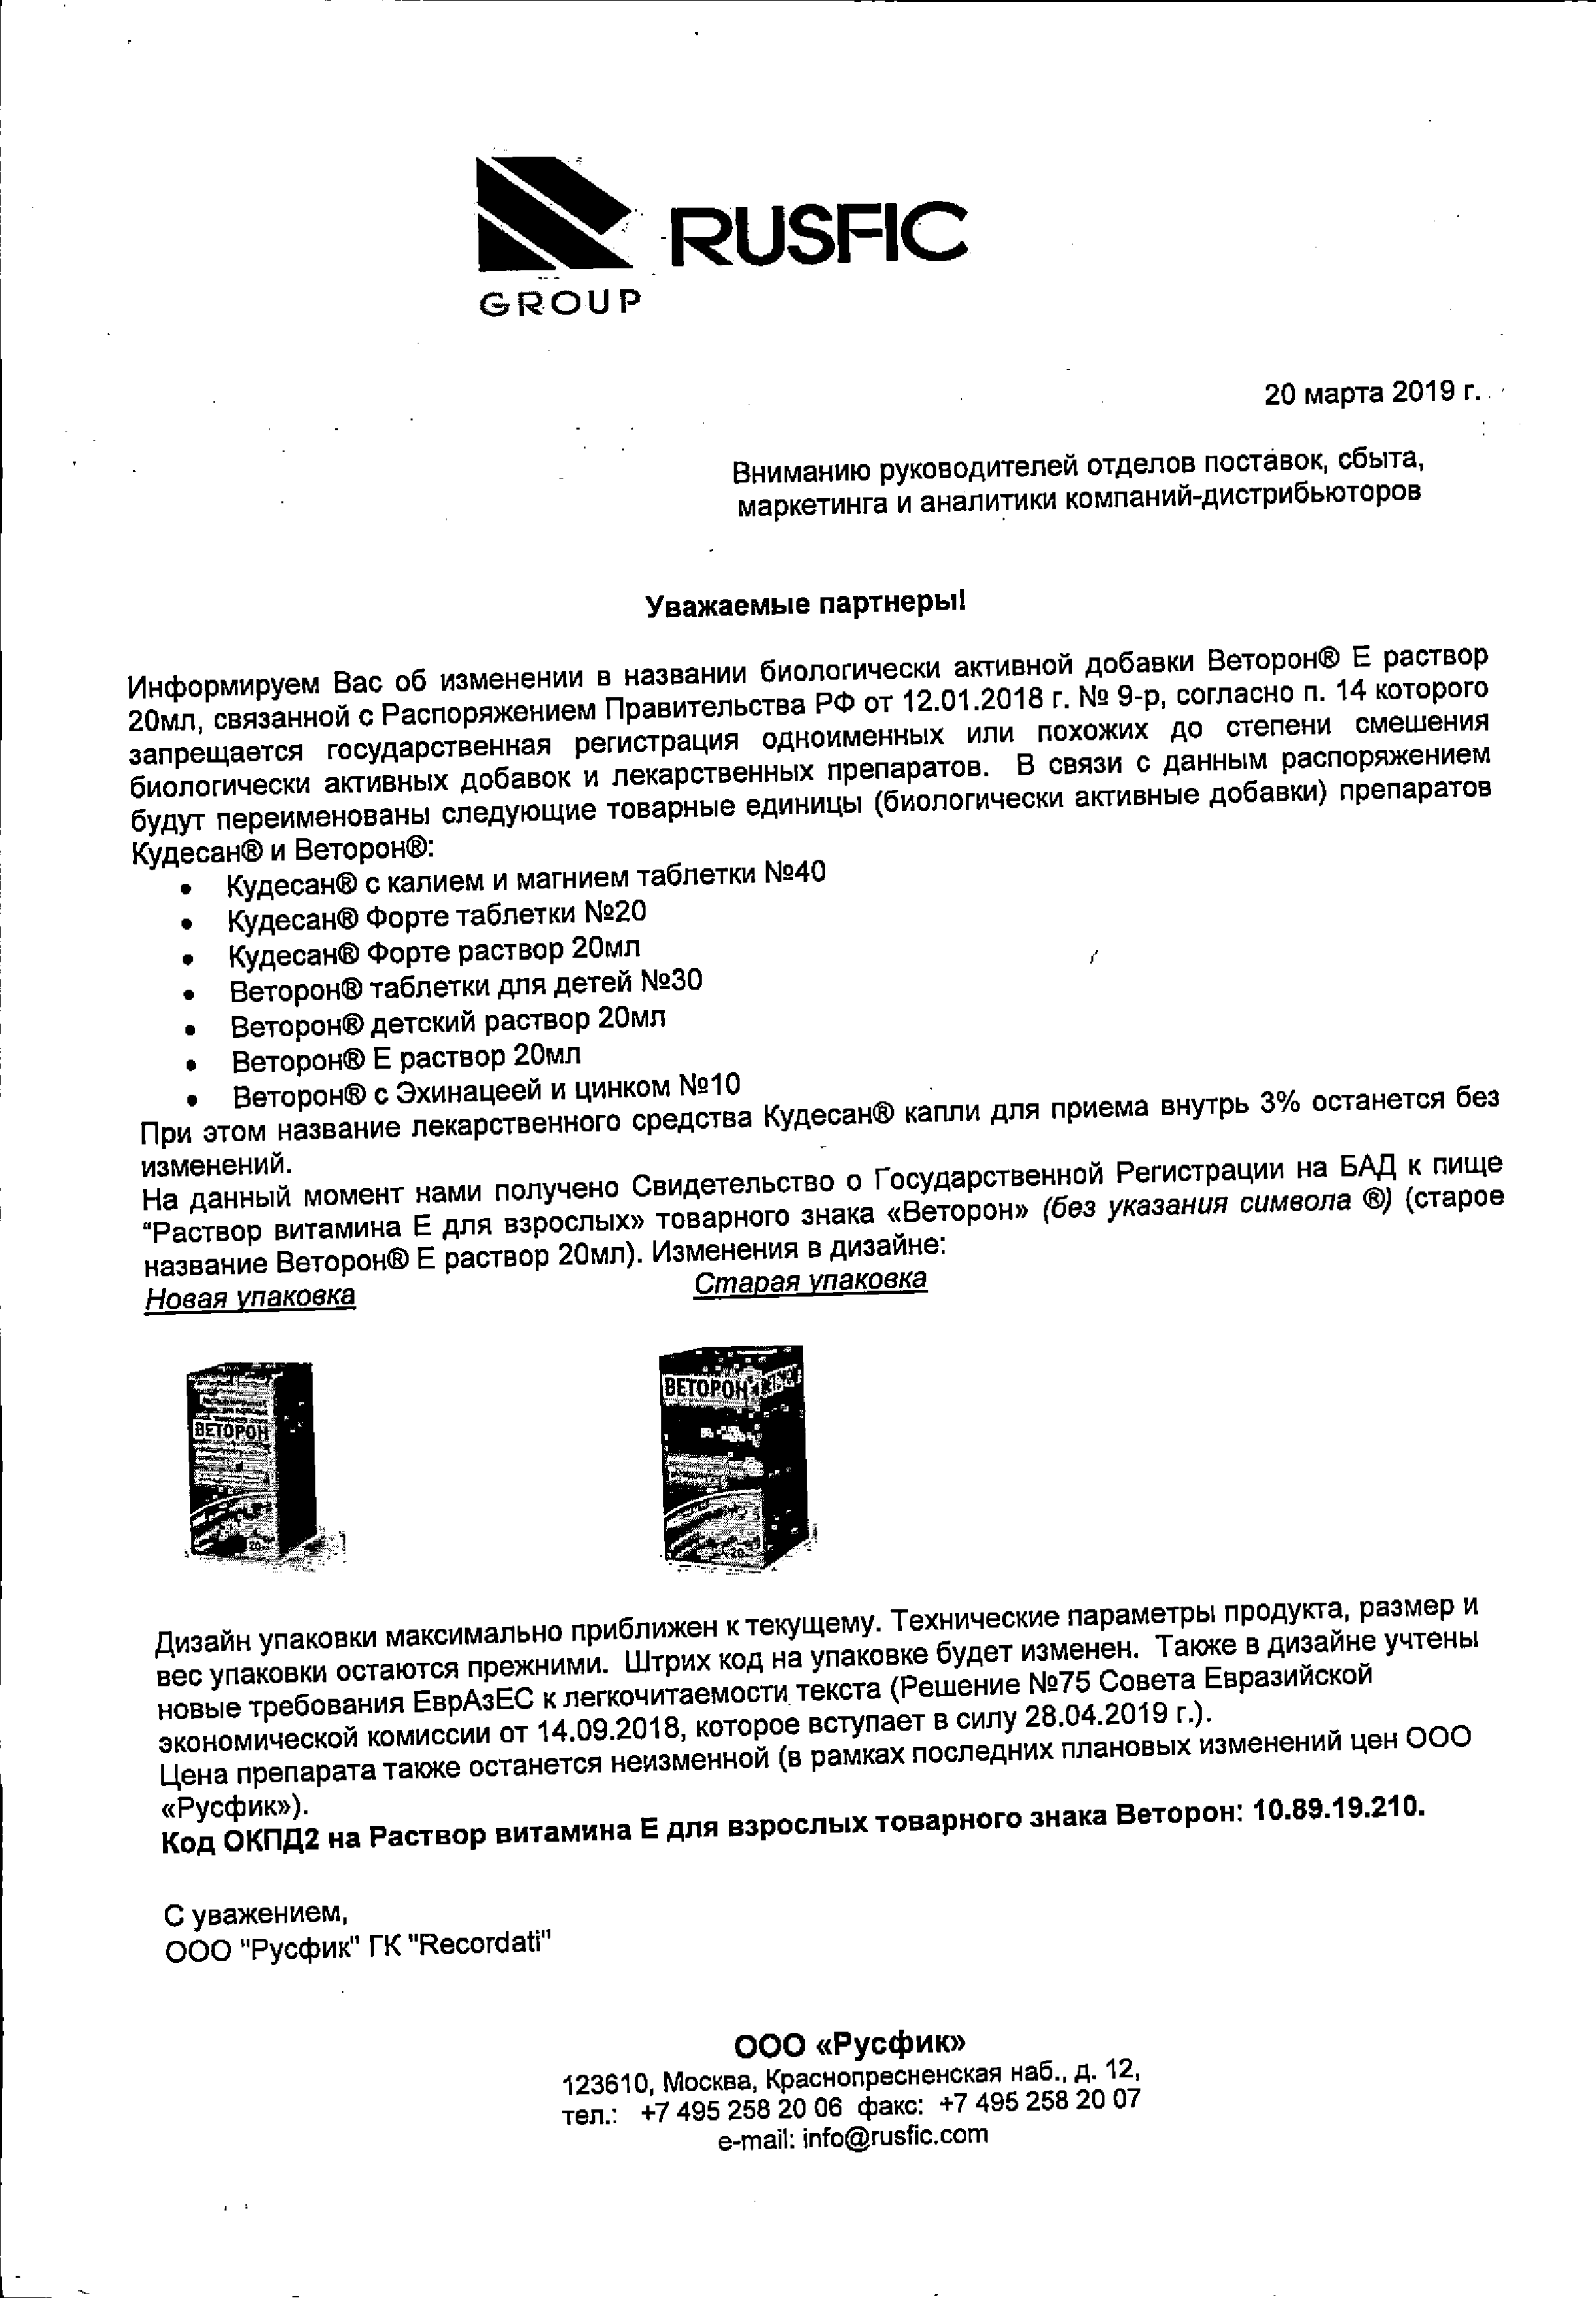 Раствор витамина Е для взрослых товарного знака ВЕТОРОН сертификат